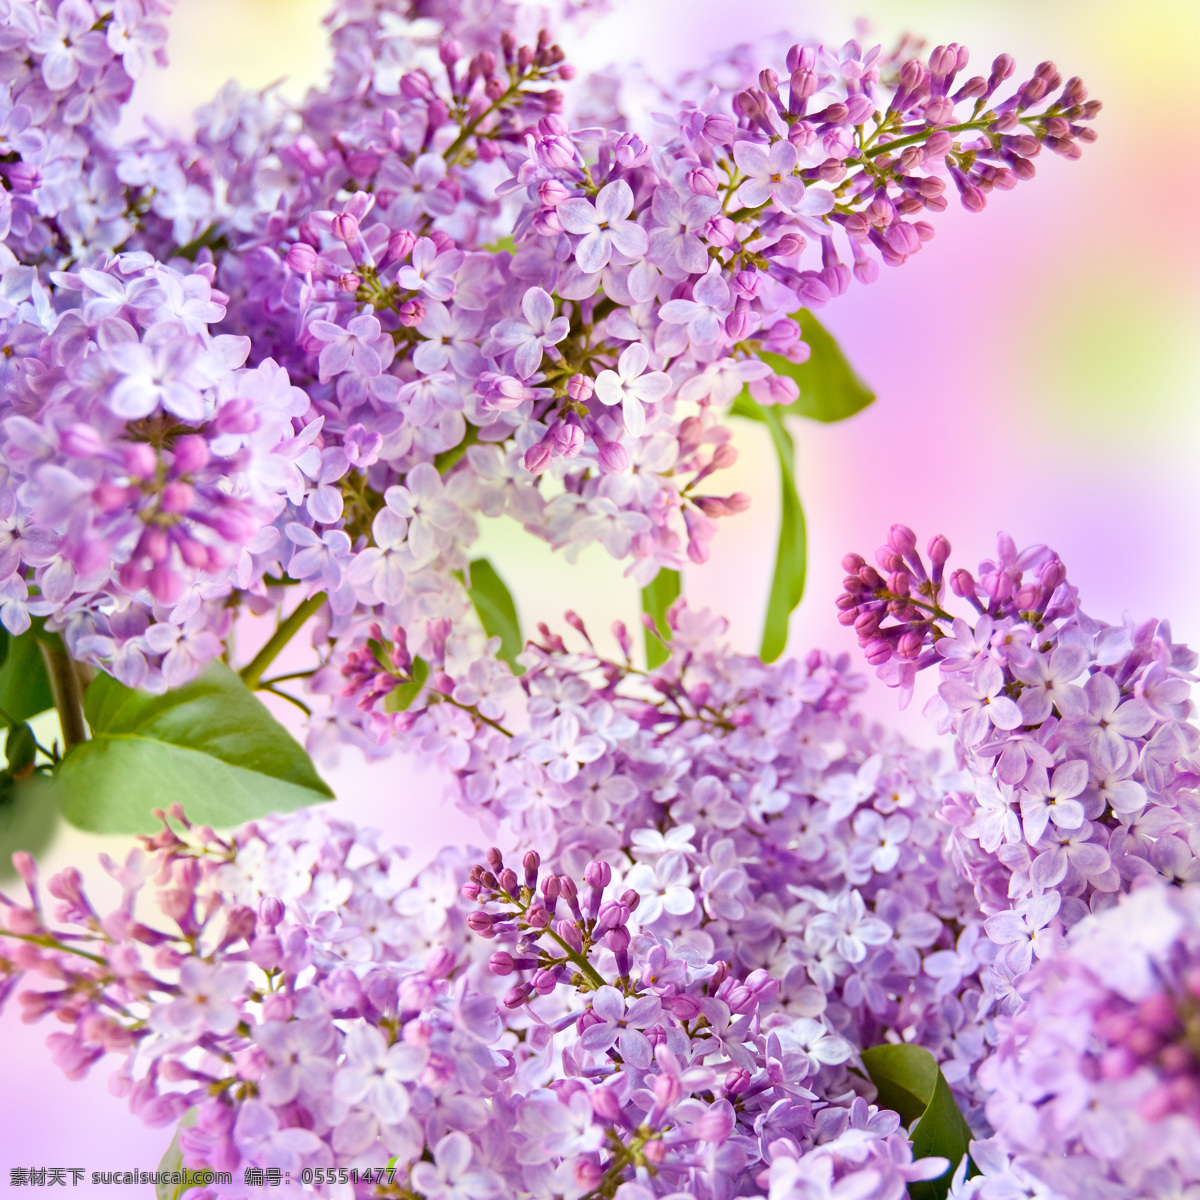 美丽 紫色 小花 紫色小花 美丽鲜花 漂亮花朵 花卉 鲜花背景 花草树木 生物世界